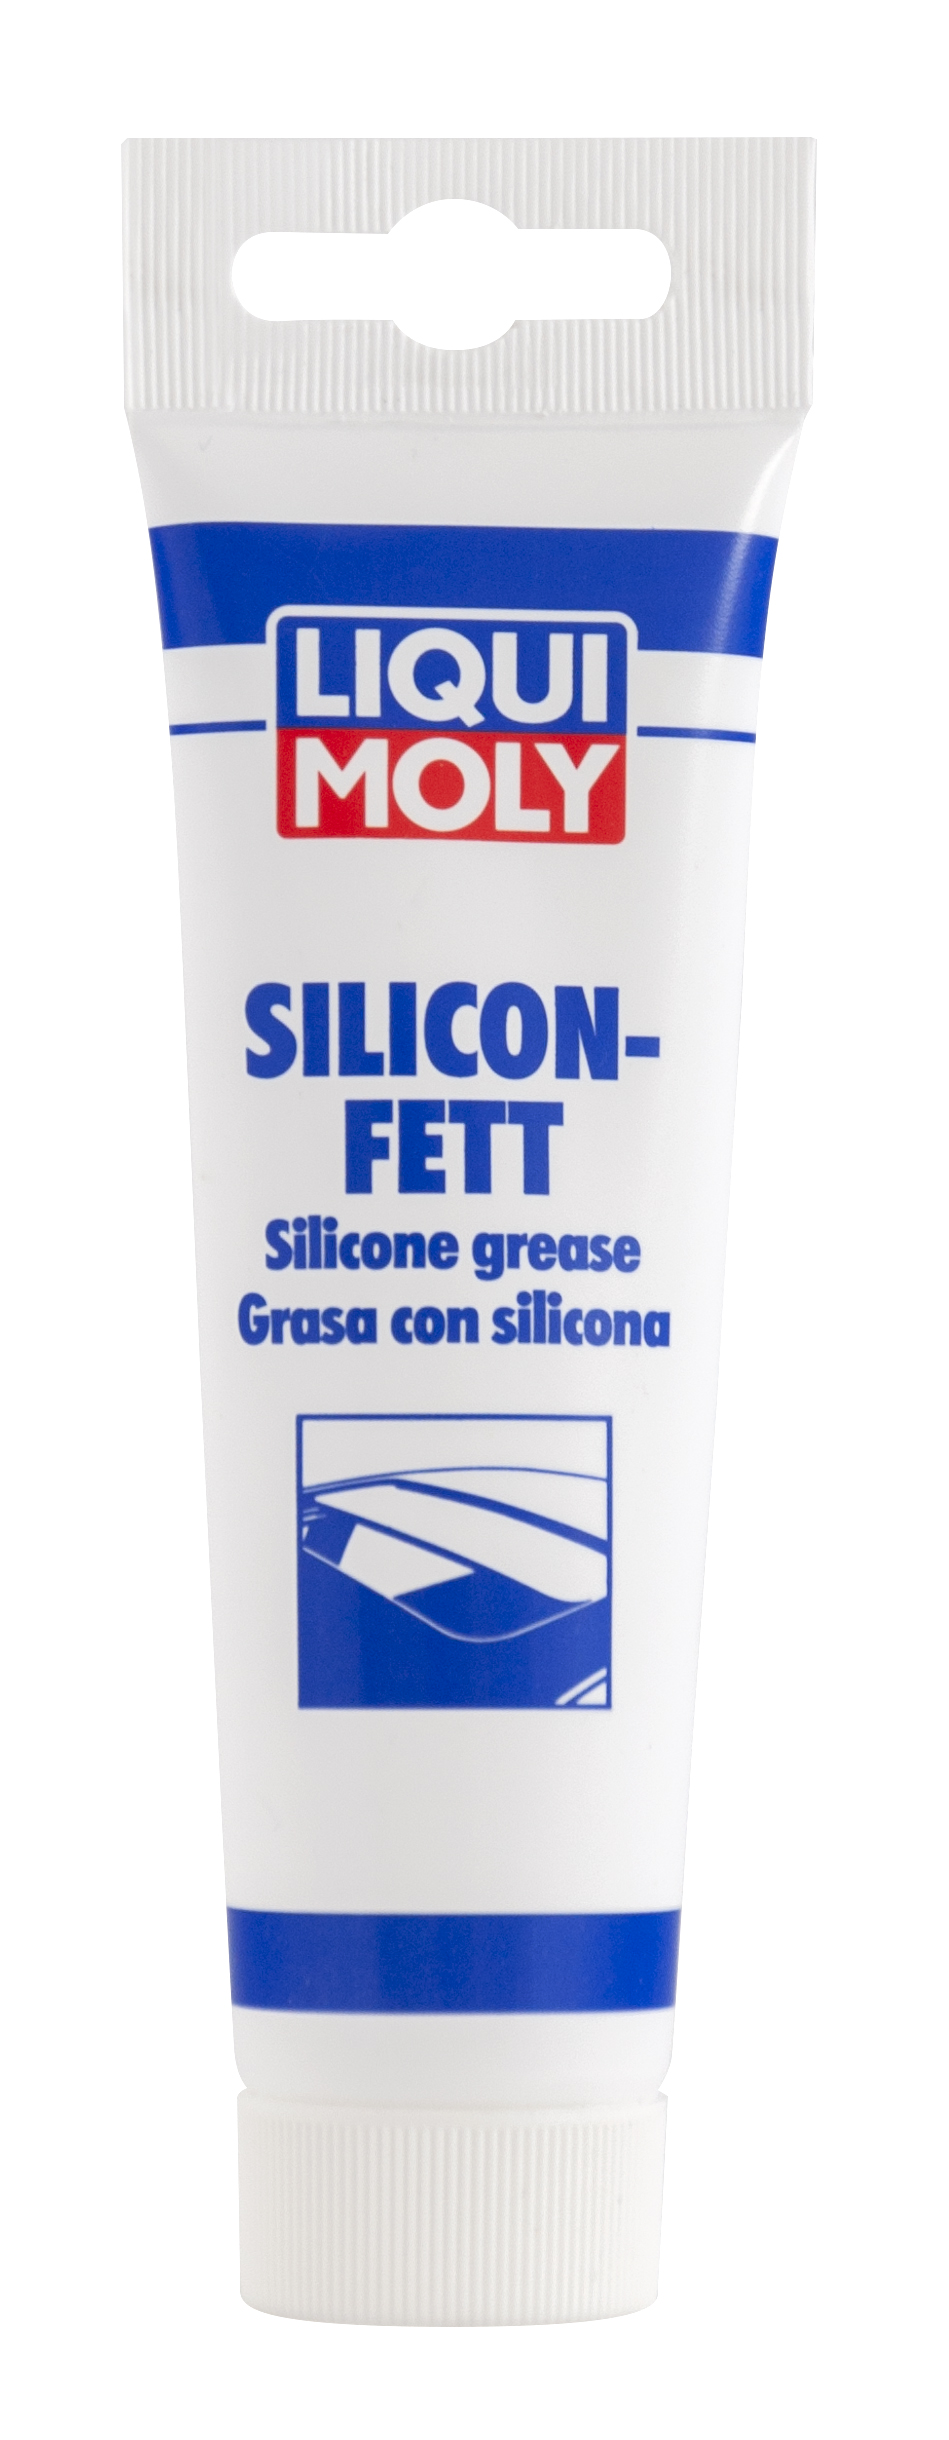 Силиконовая смазка Silicon-Fett 0,1 л. 3312 LIQUI MOLY - купить по низкой  цене